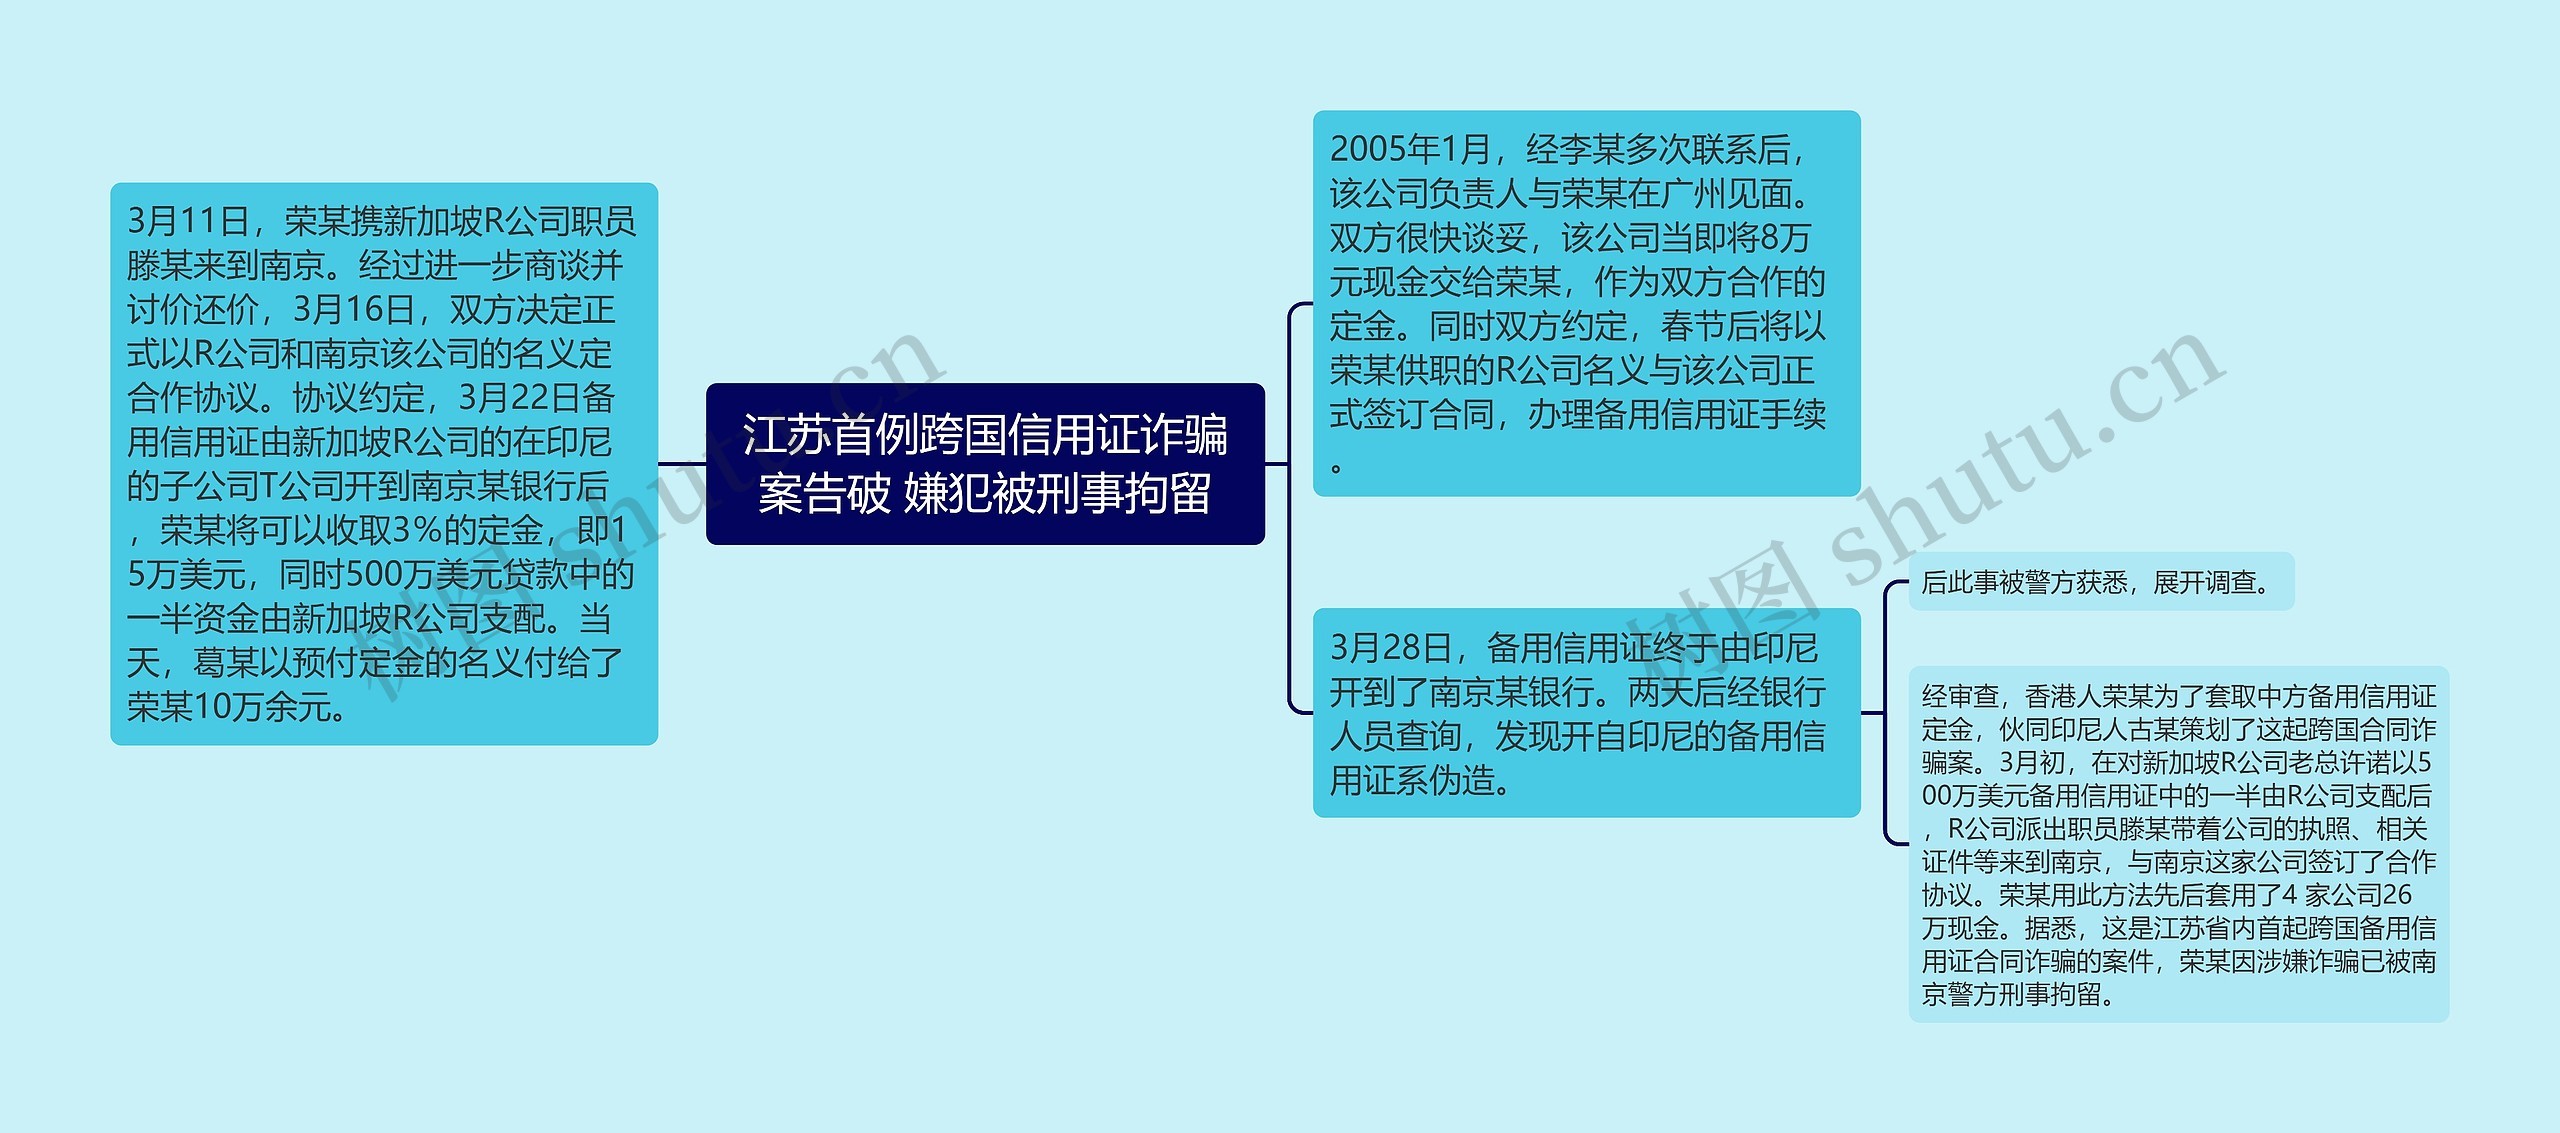 江苏首例跨国信用证诈骗案告破 嫌犯被刑事拘留